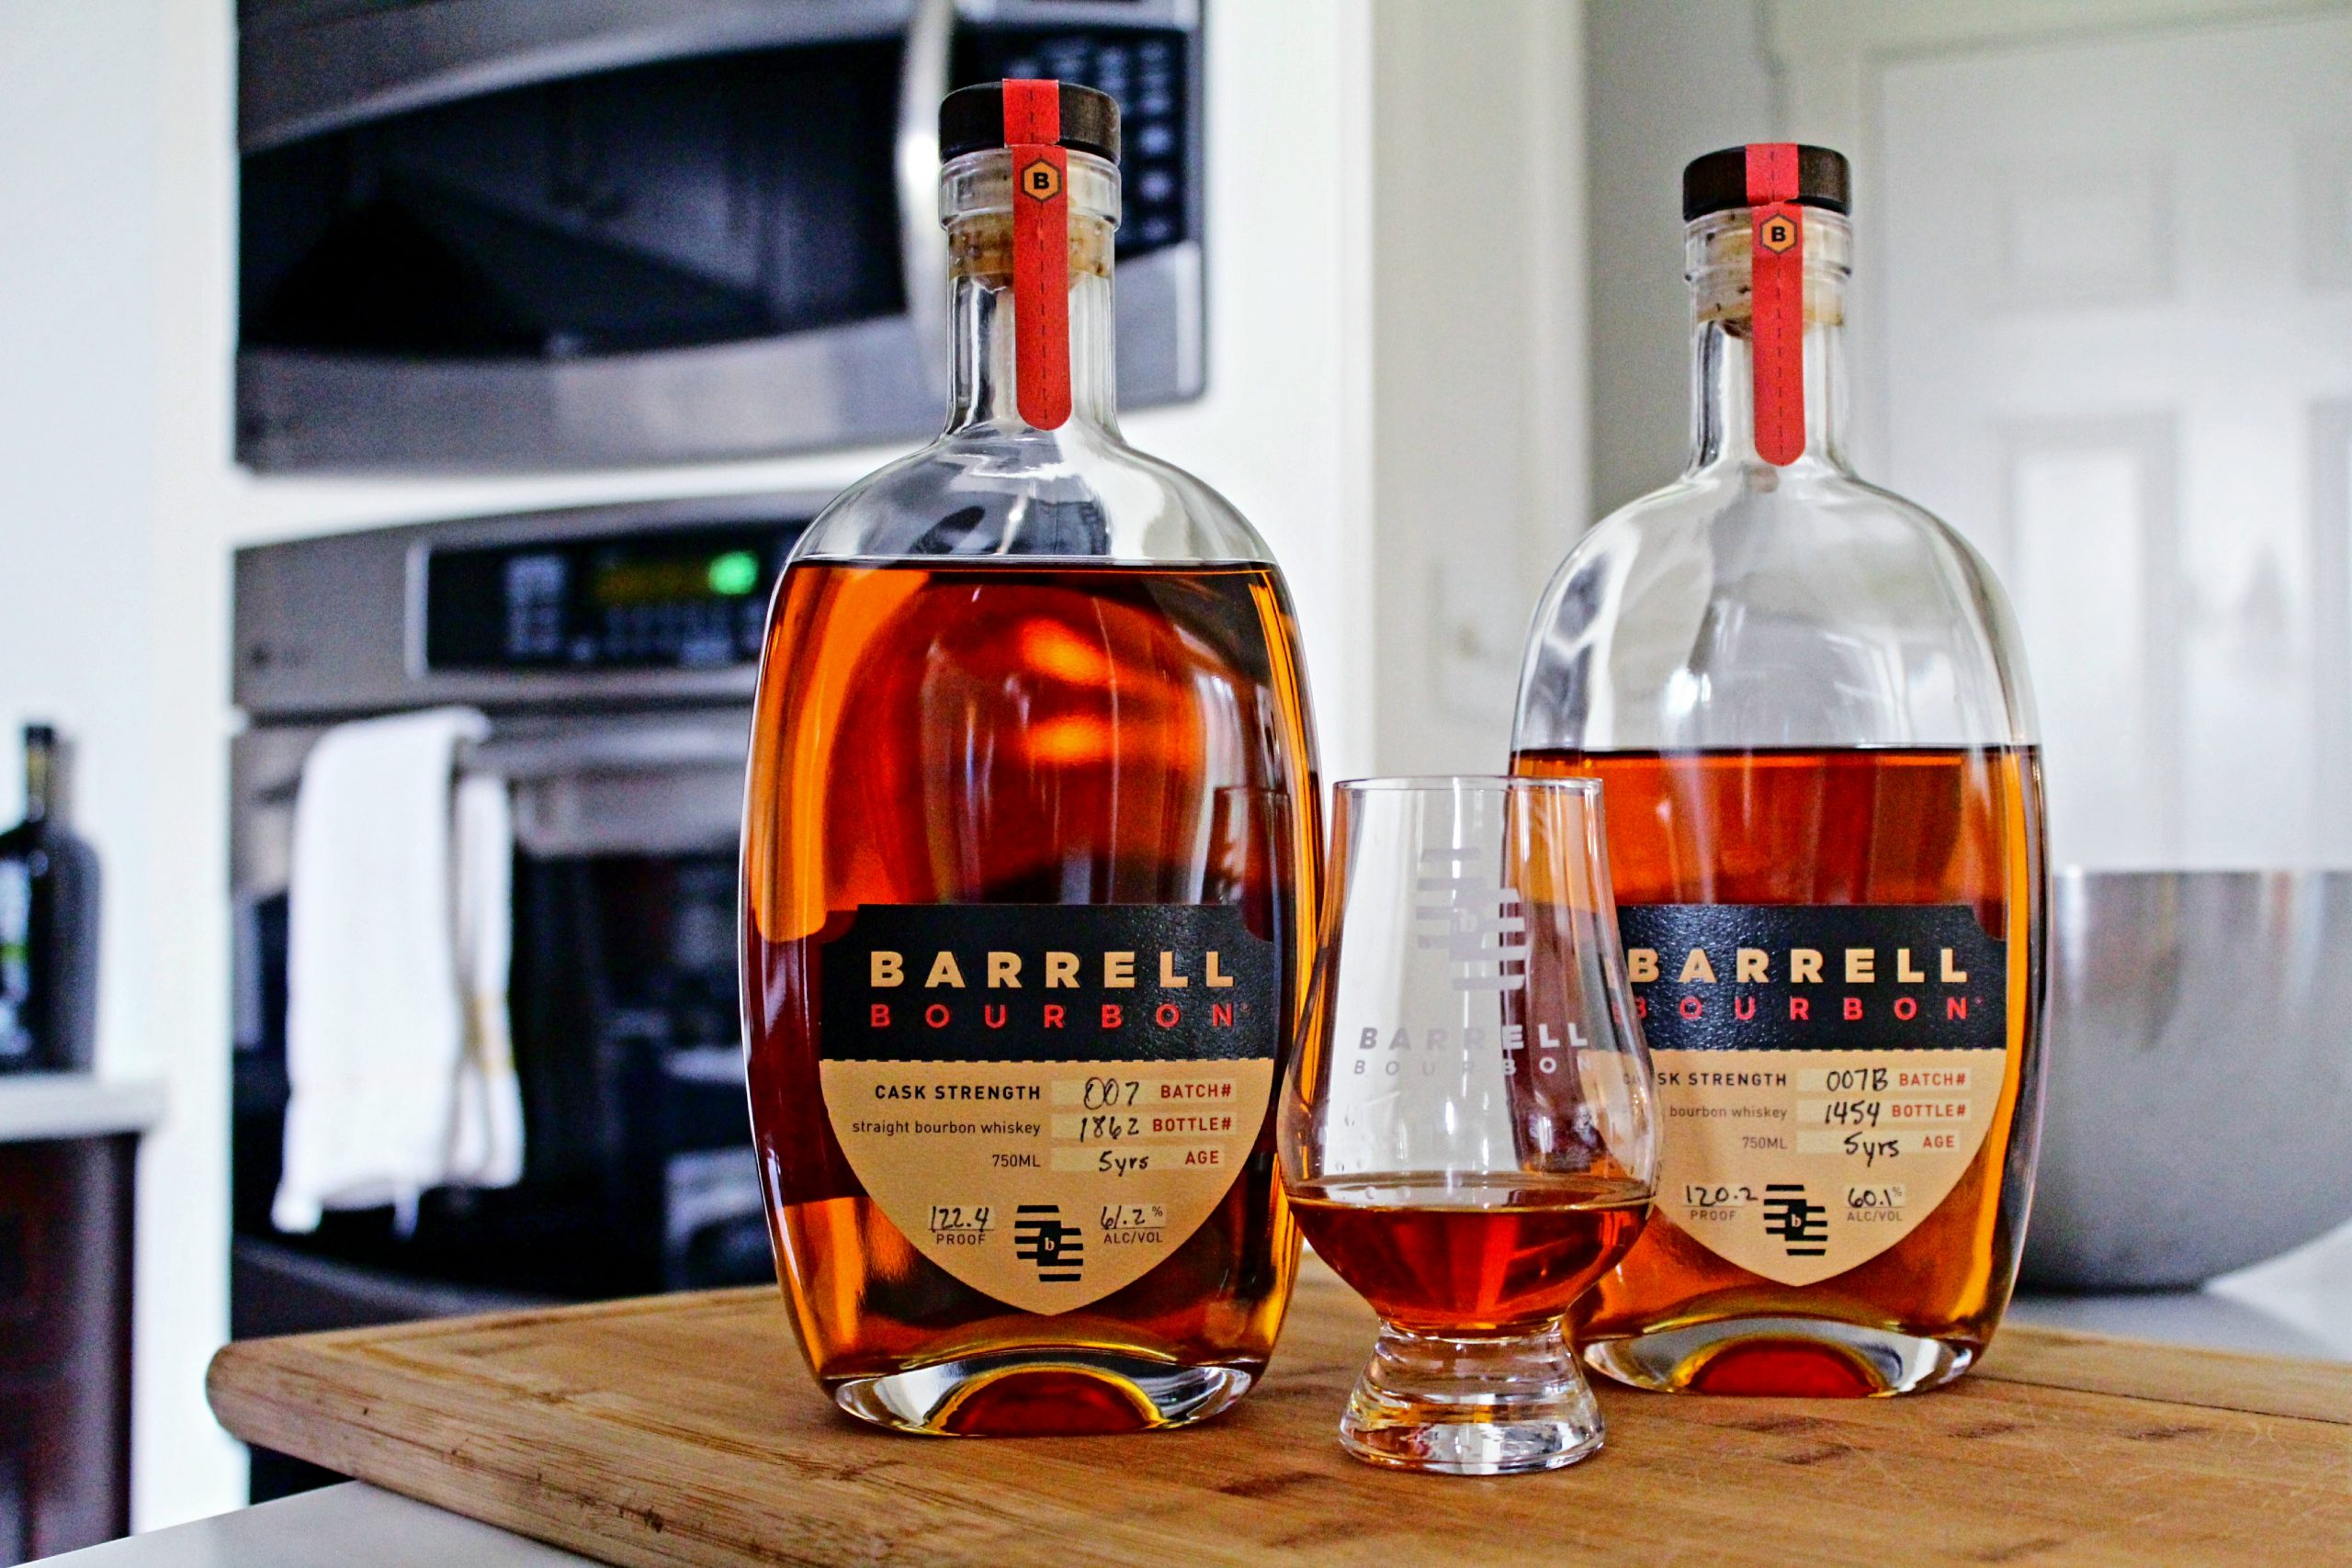 Barrell Bourbon Batch 007 and 007b